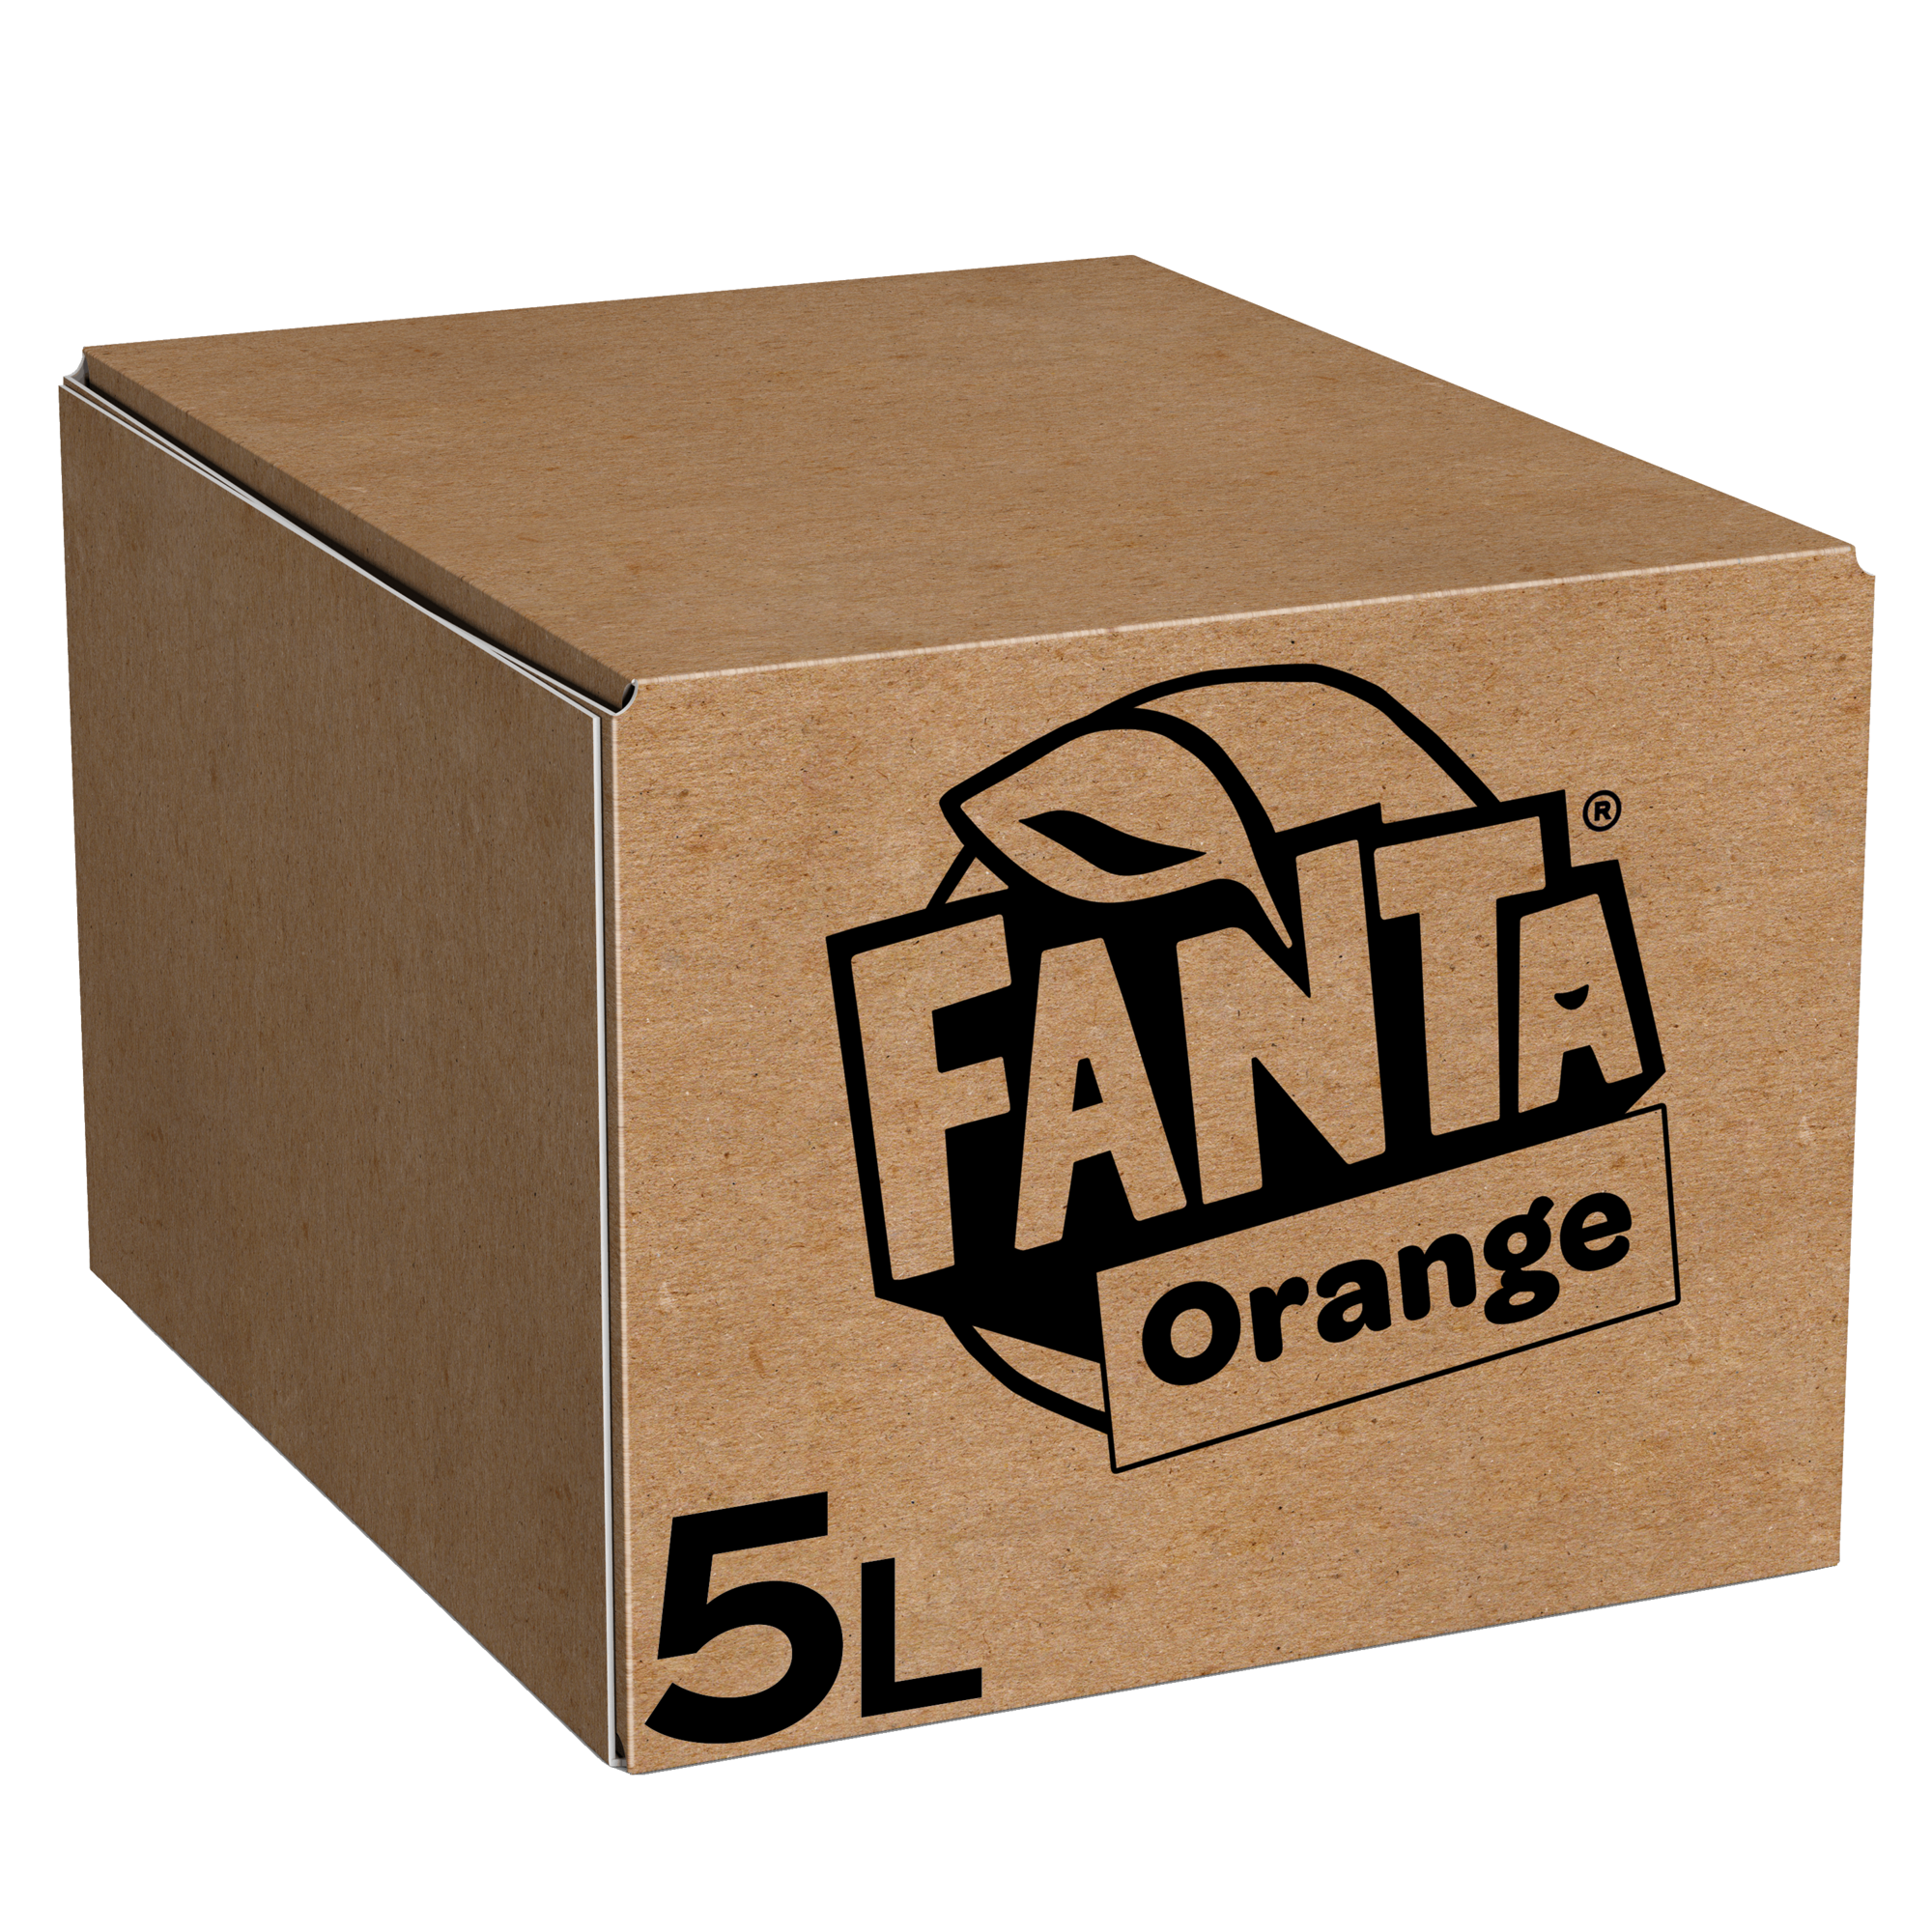 76341 Fanta orange postmix bag in box 1x5ltr